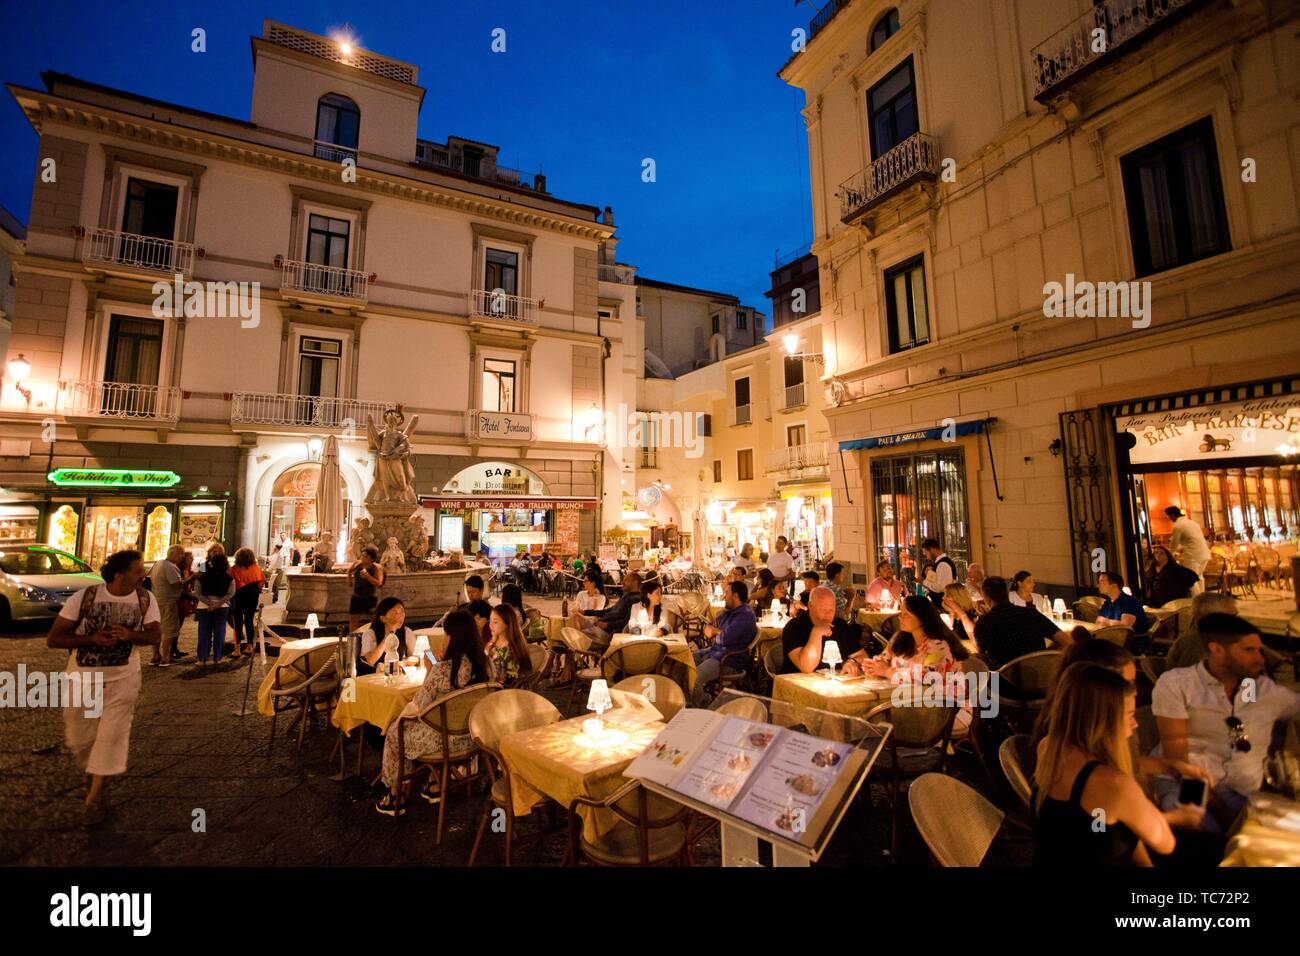 Restaurante, La Plaza de la Catedral, la Piazza del Duomo, Amalfi, provincia de Salerno, en la costa de Amalfi, el Golfo de Salerno, Campania, Italia, Europa. Foto de stock